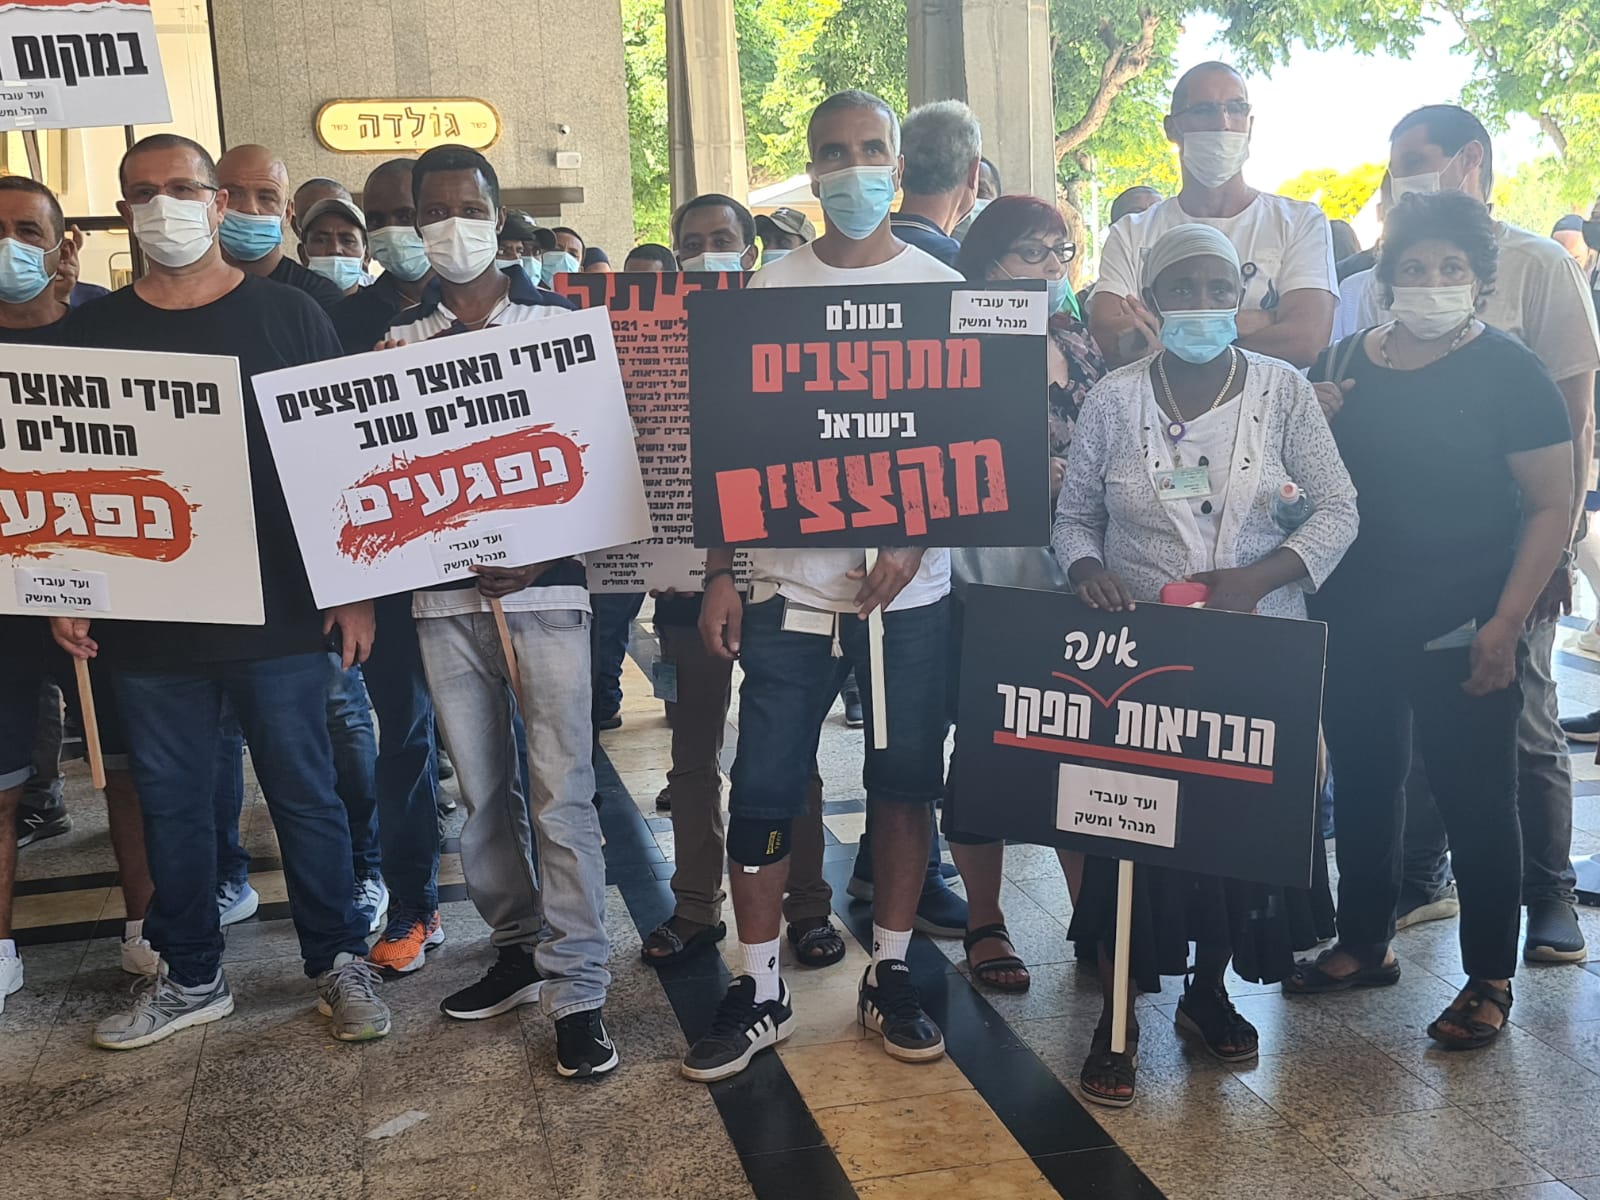 مظاهرة الموظفين الإداريين وعمال المرافق في المستشفيات الحكومية، المركز الطبي شيبا، في اليوم الثاني من الإضراب (تصوير: دافنا إيزبروخ)